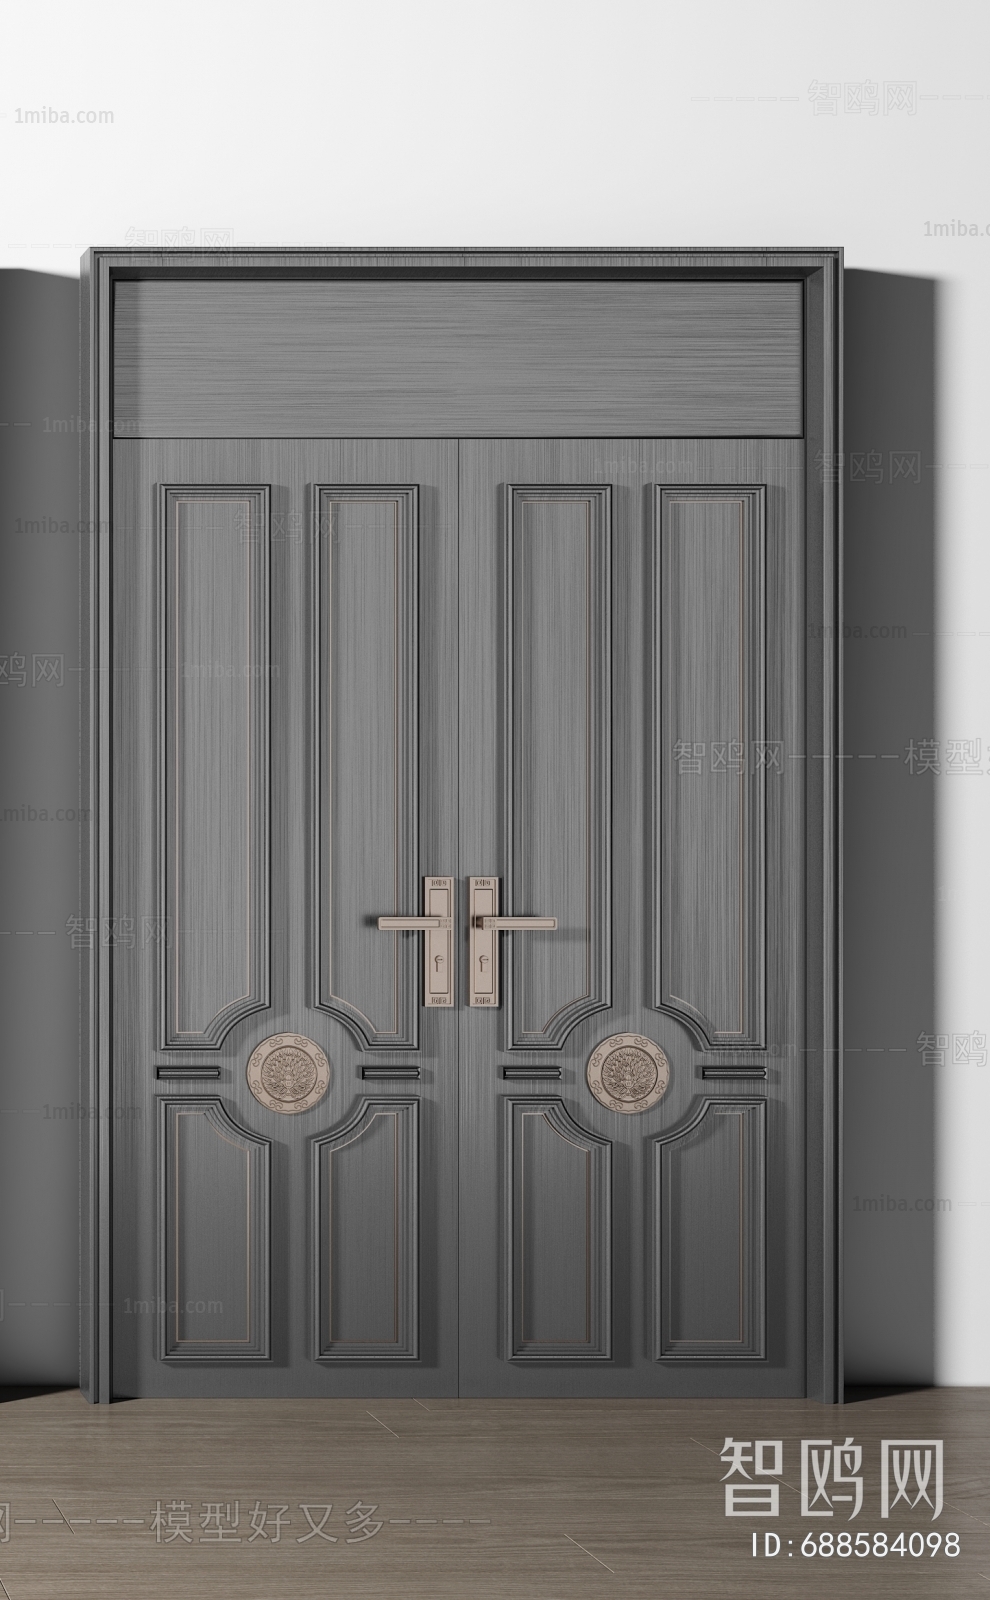 Modern Entrance Door